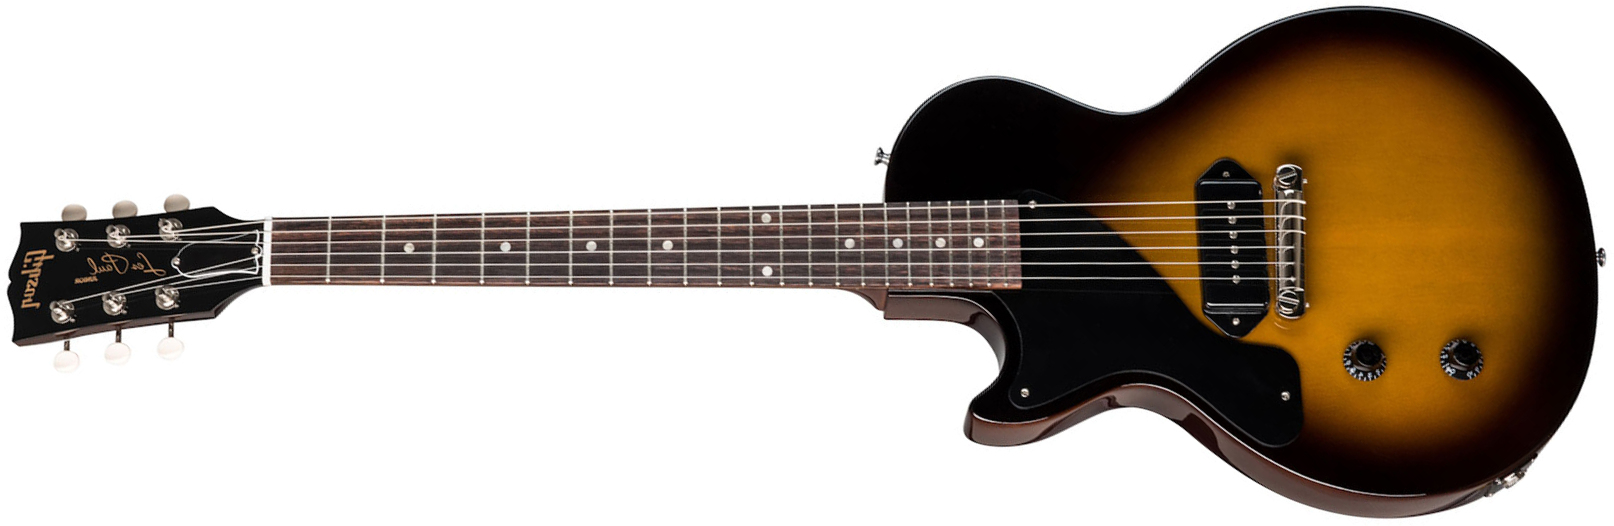 Gibson Les Paul Special Lh Original Gaucher 2p90 Ht Rw - Vintage Tobacco Burst - Linkshandige elektrische gitaar - Main picture